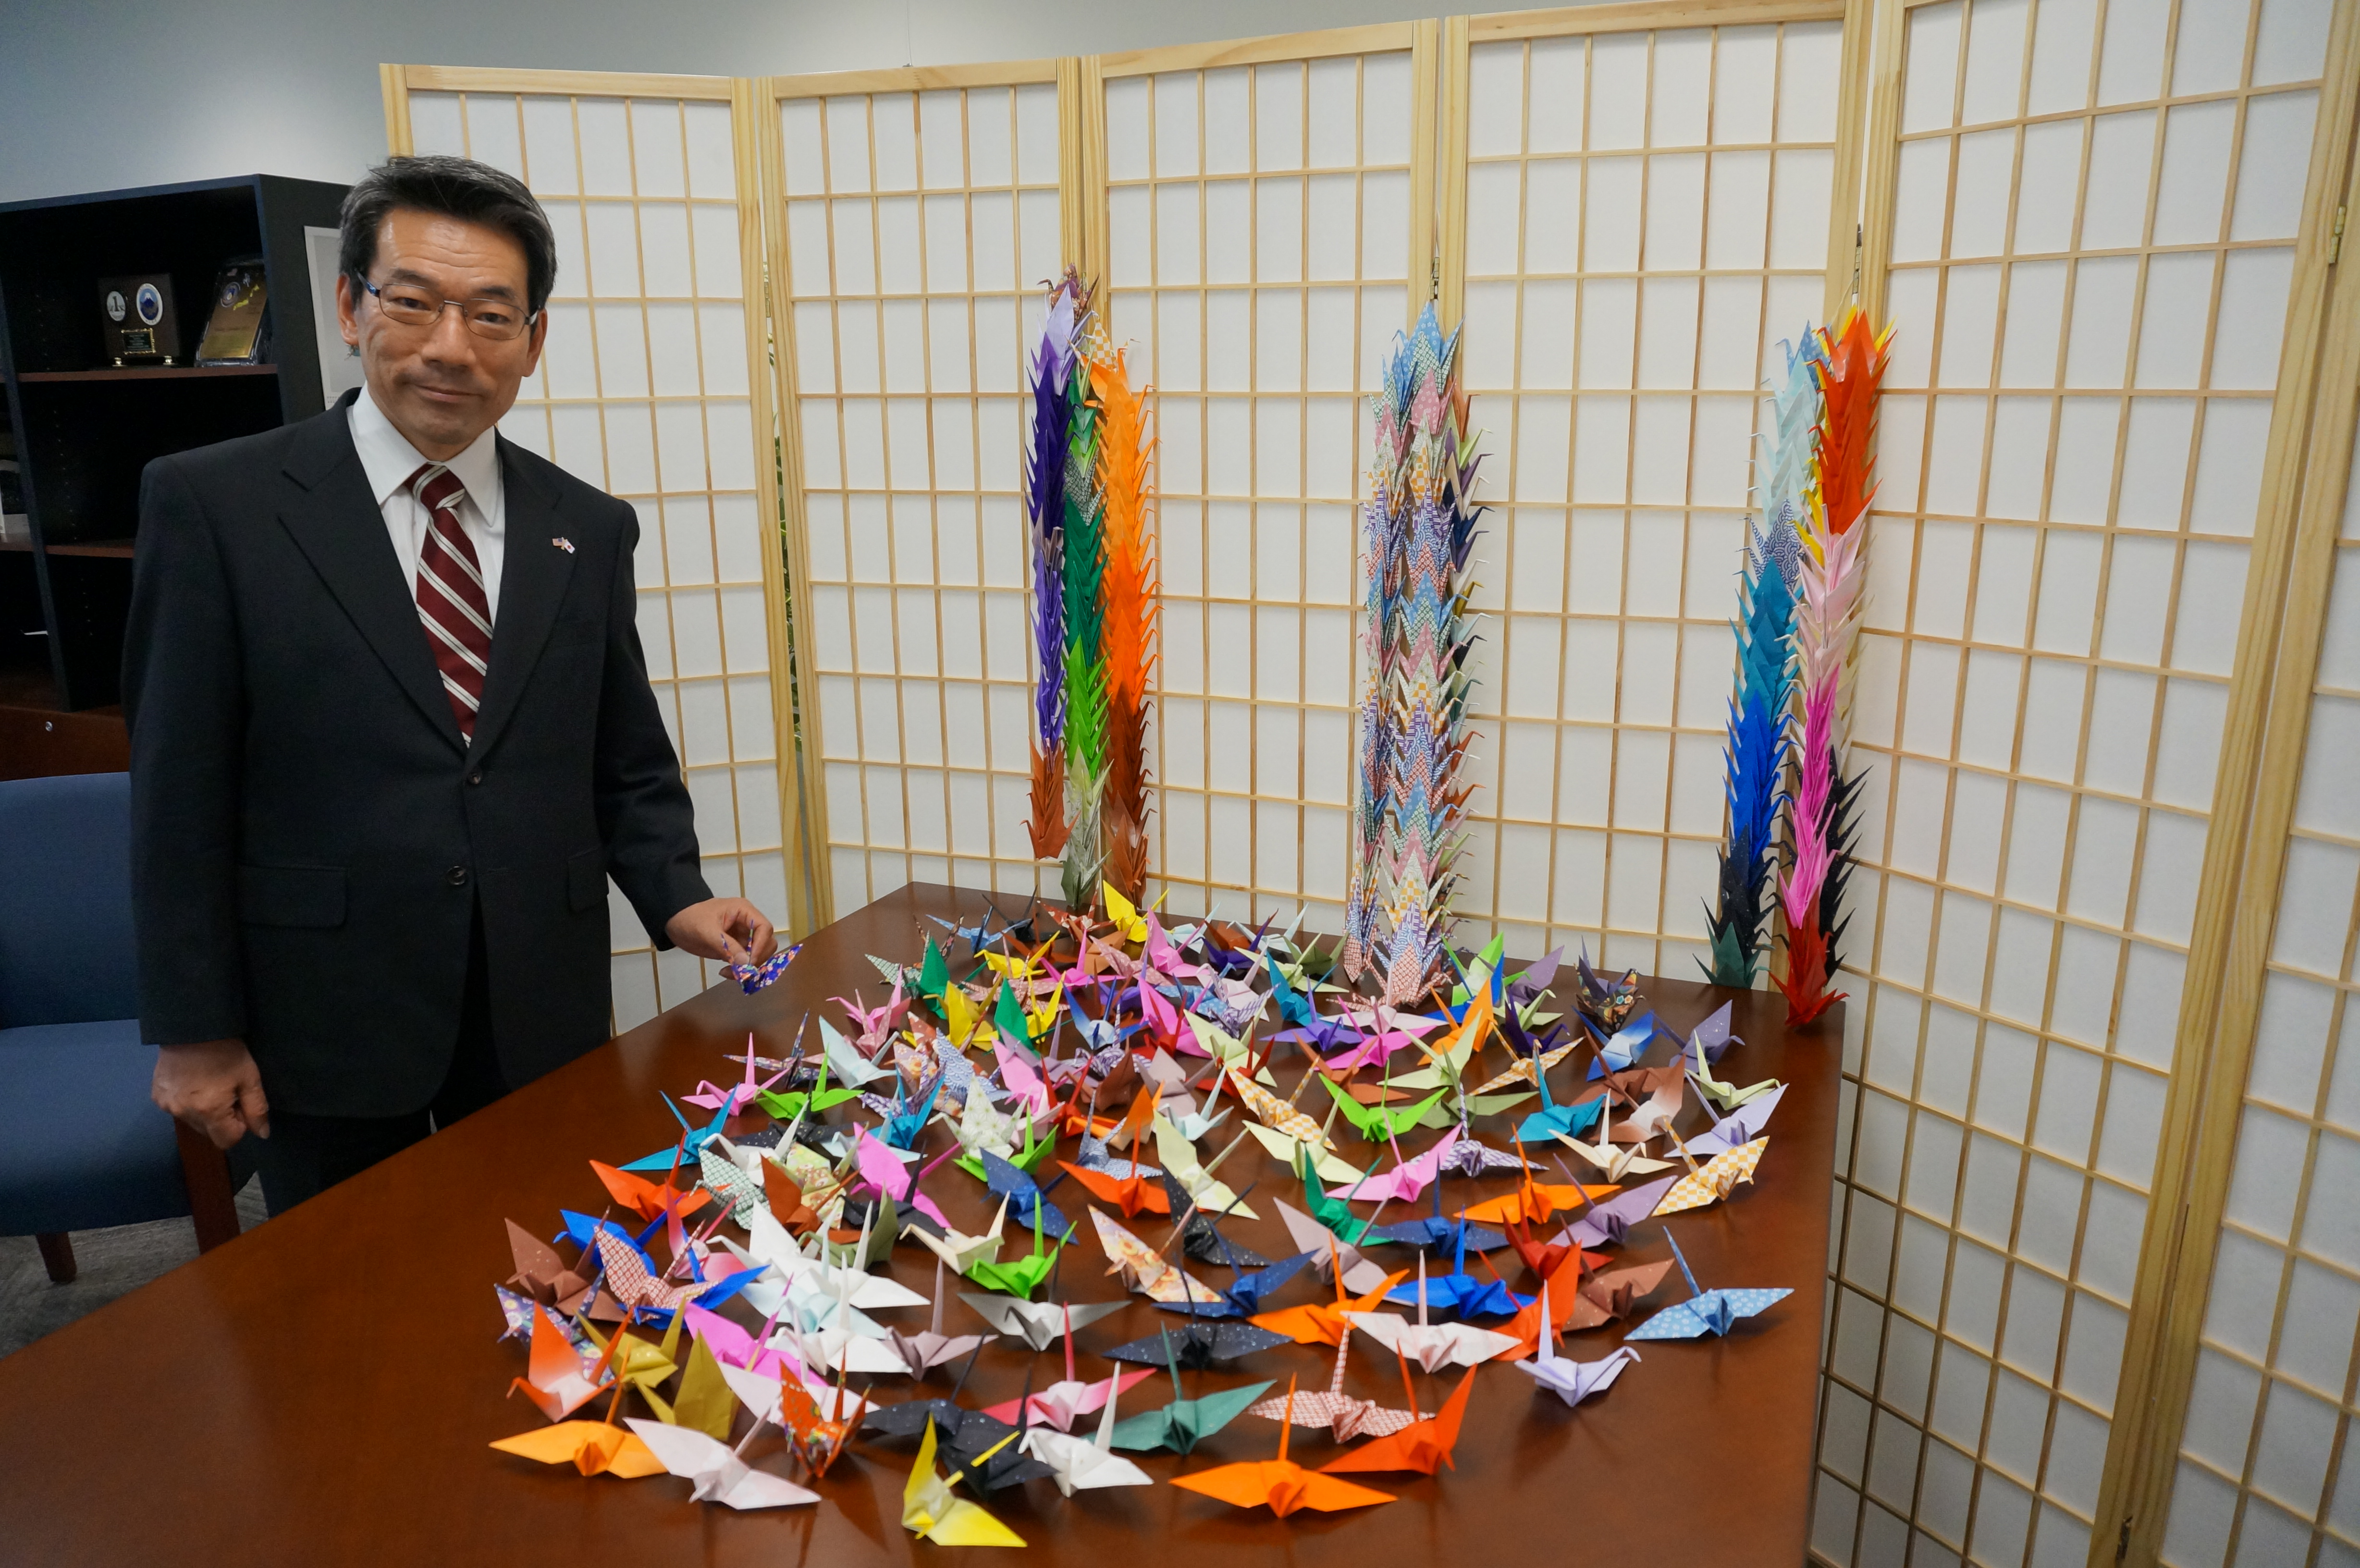 Hisao Inagaki memamerkan koleksi bangau kertas ciptaannya.